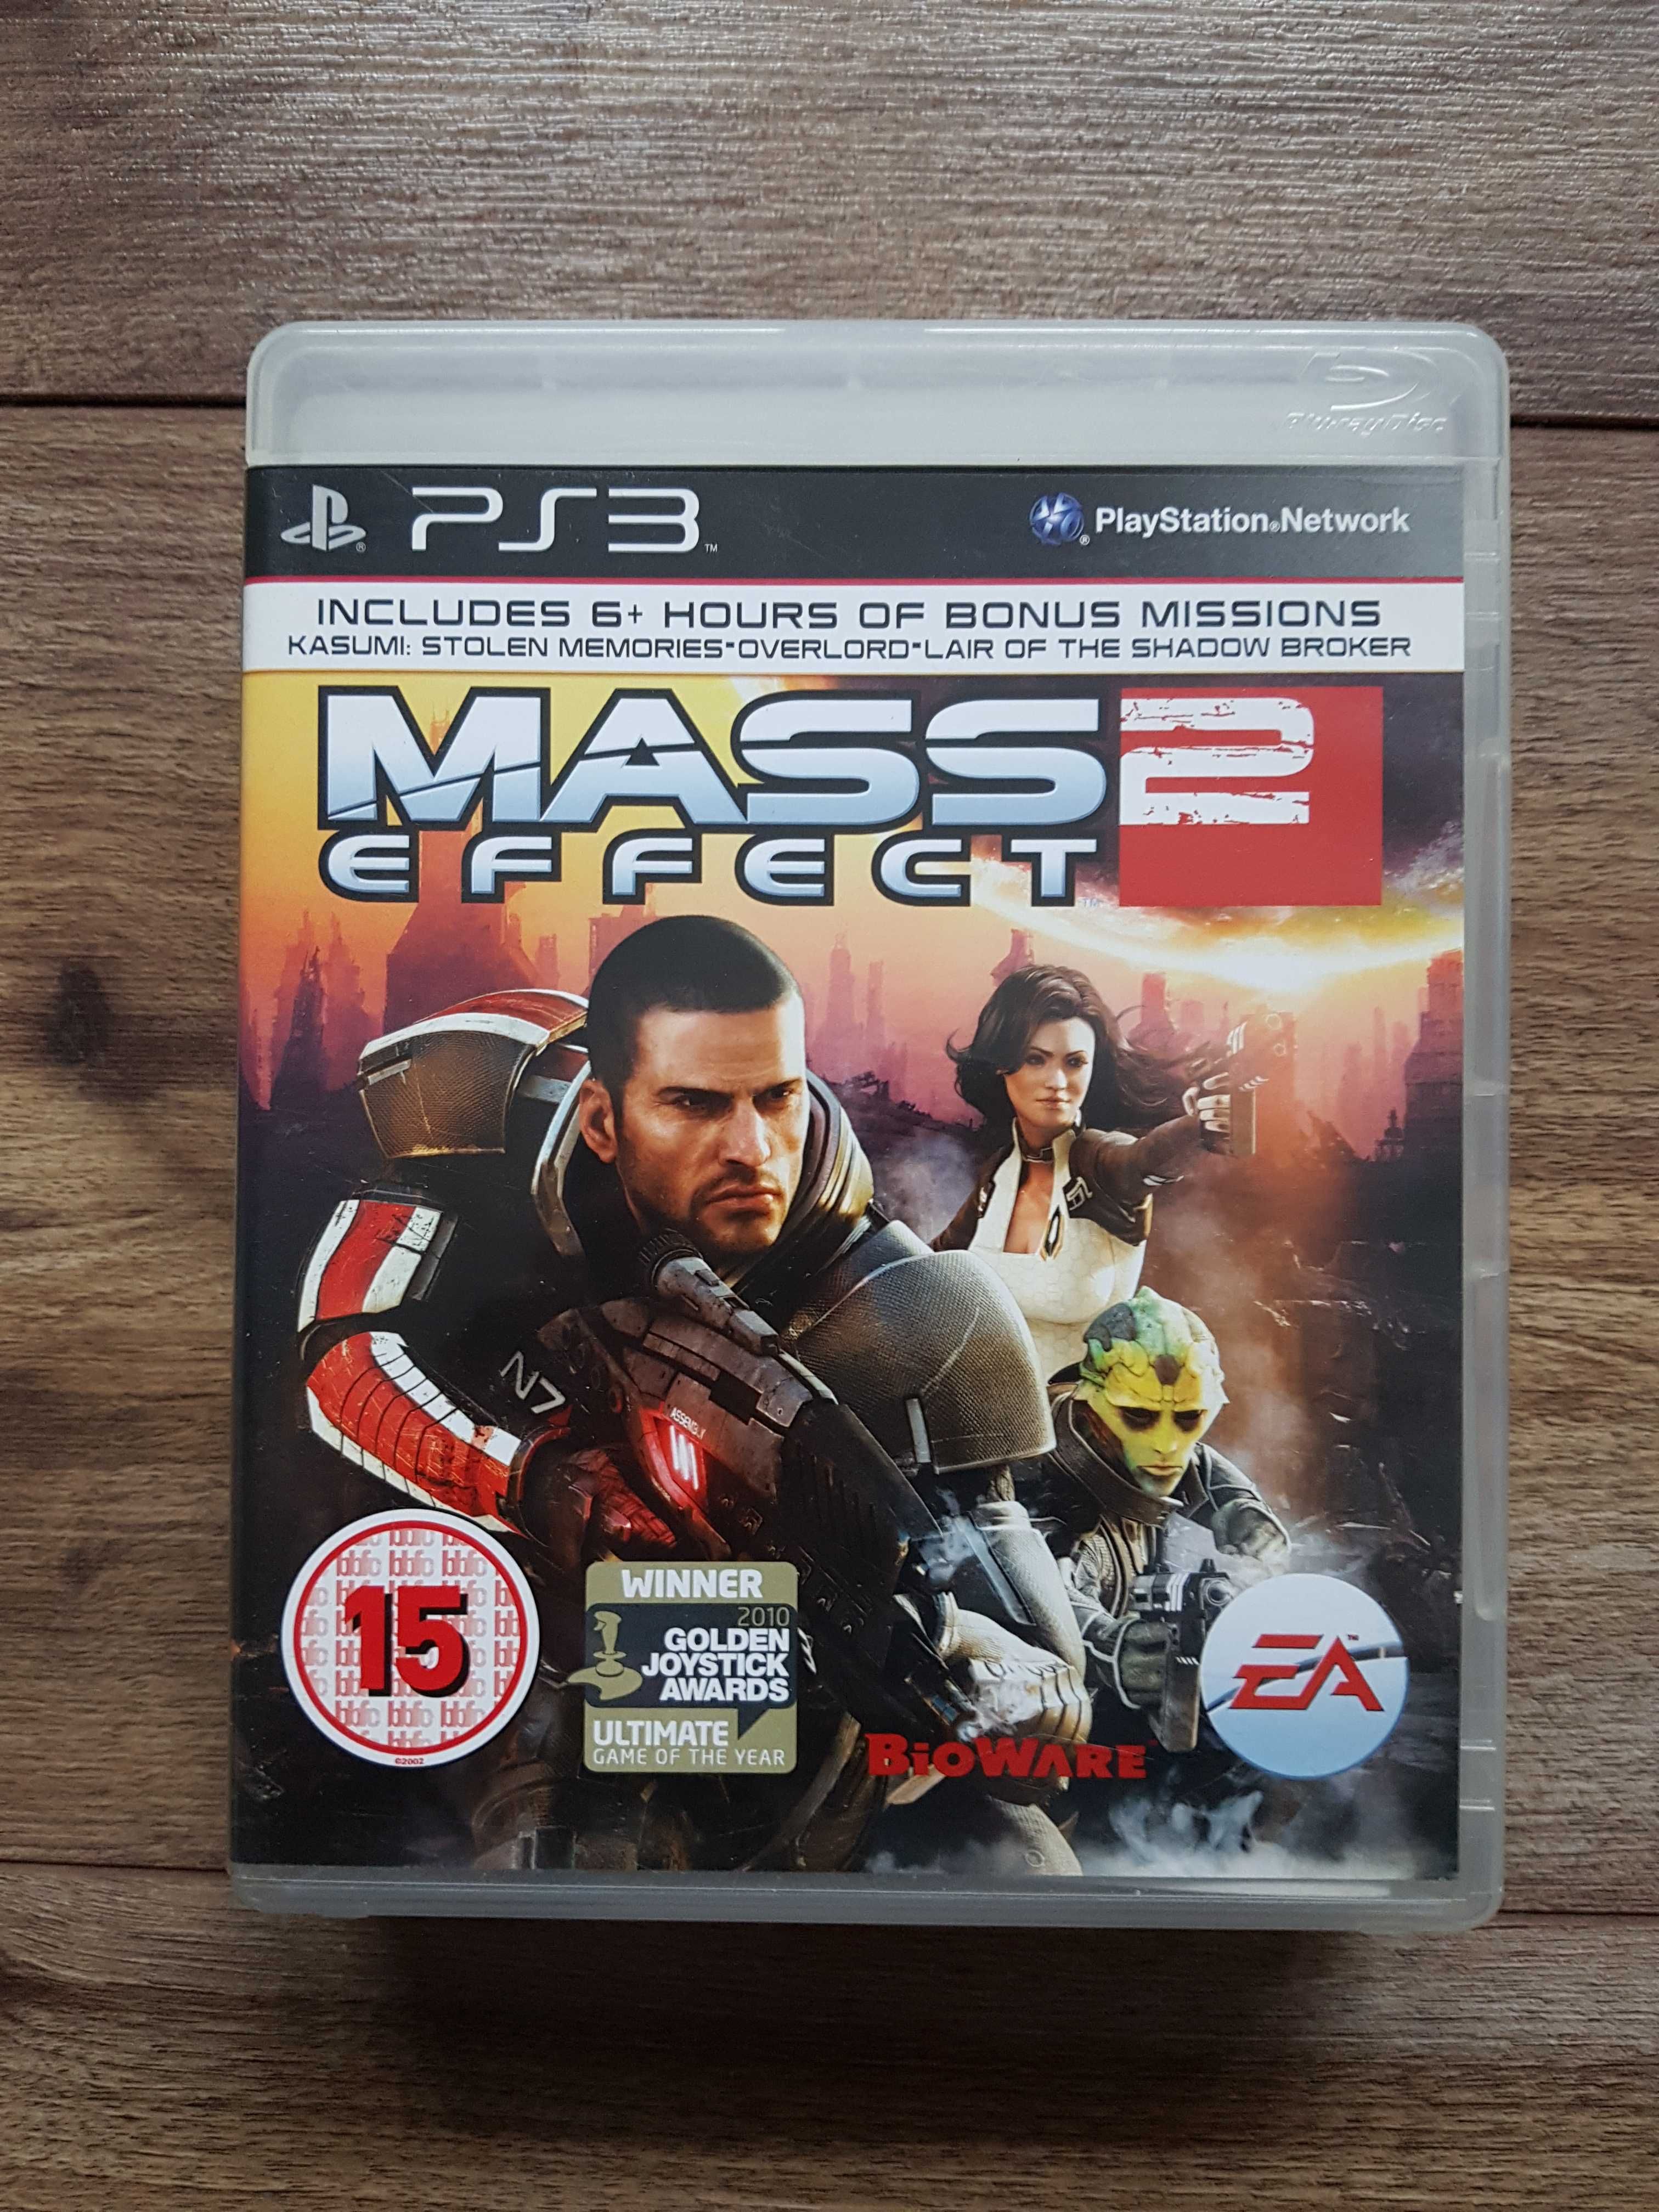 Vand Mass Effect 2 - Ps3